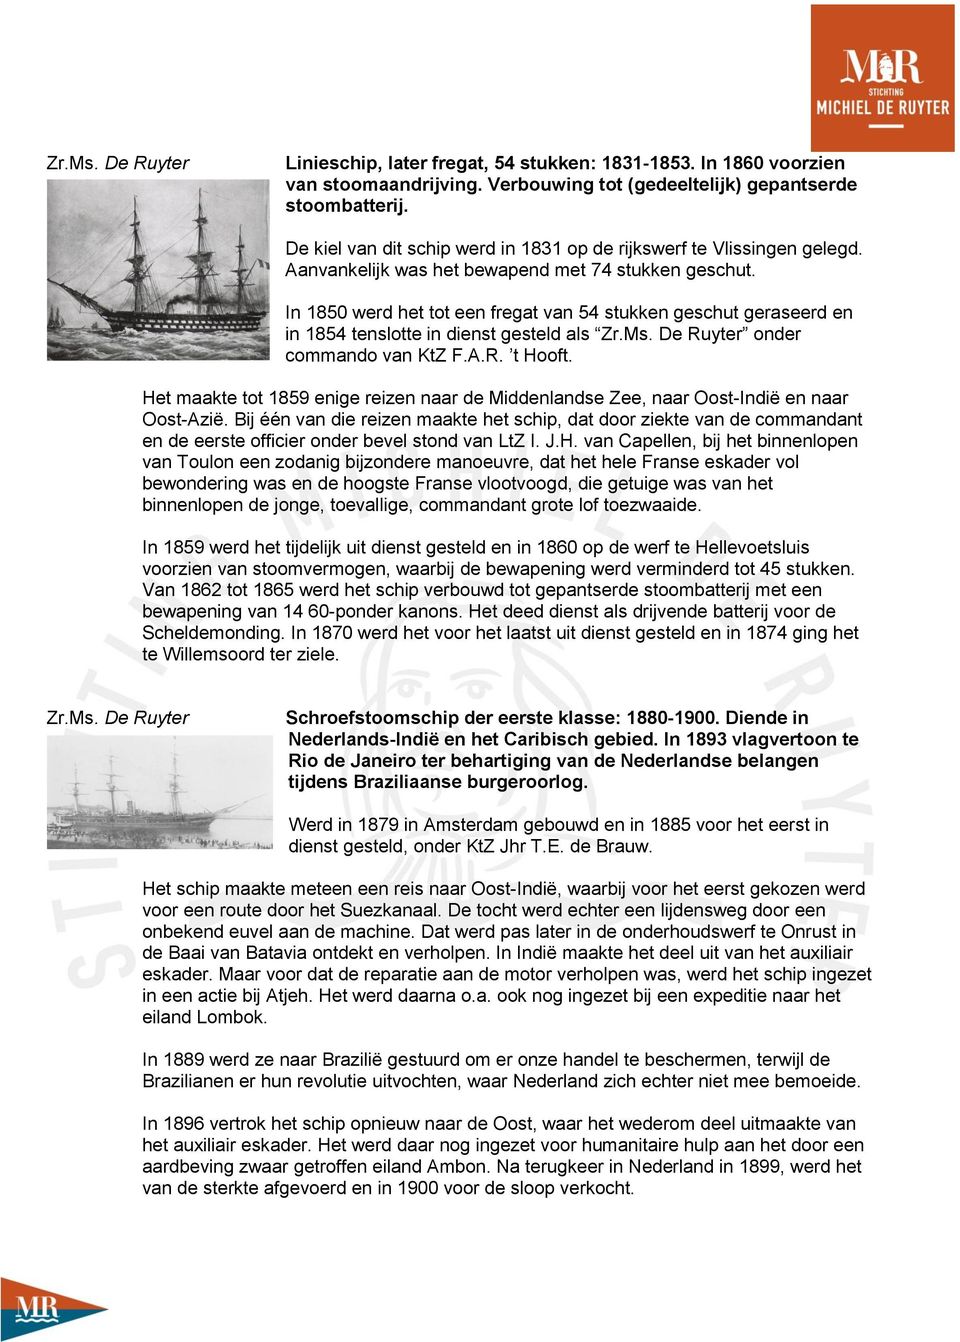 In 1850 werd het tot een fregat van 54 stukken geschut geraseerd en in 1854 tenslotte in dienst gesteld als Zr.Ms. De Ruyter onder commando van KtZ F.A.R. t Hooft.